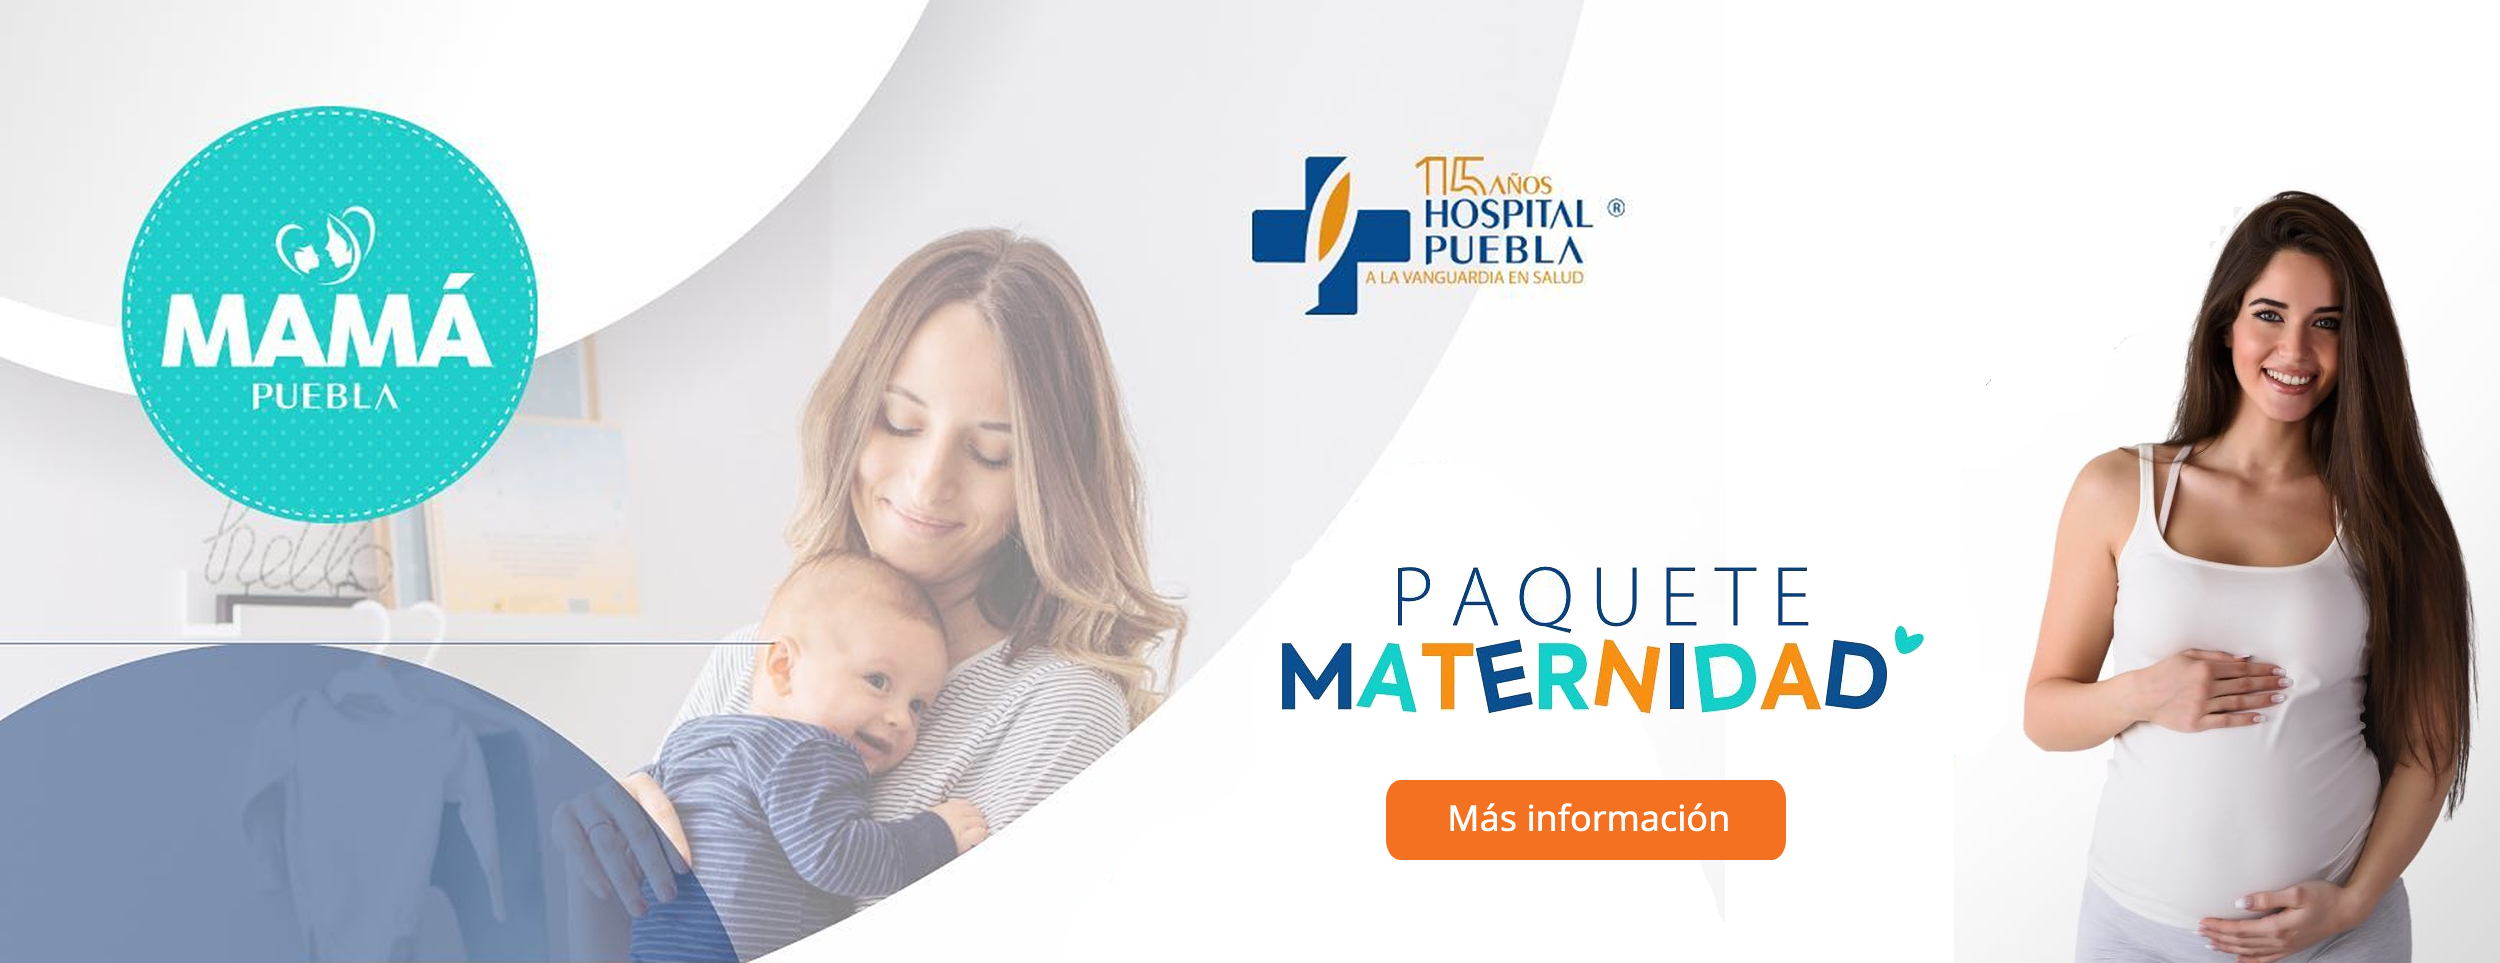 Paquetes de maternidad en Hospital Puebla